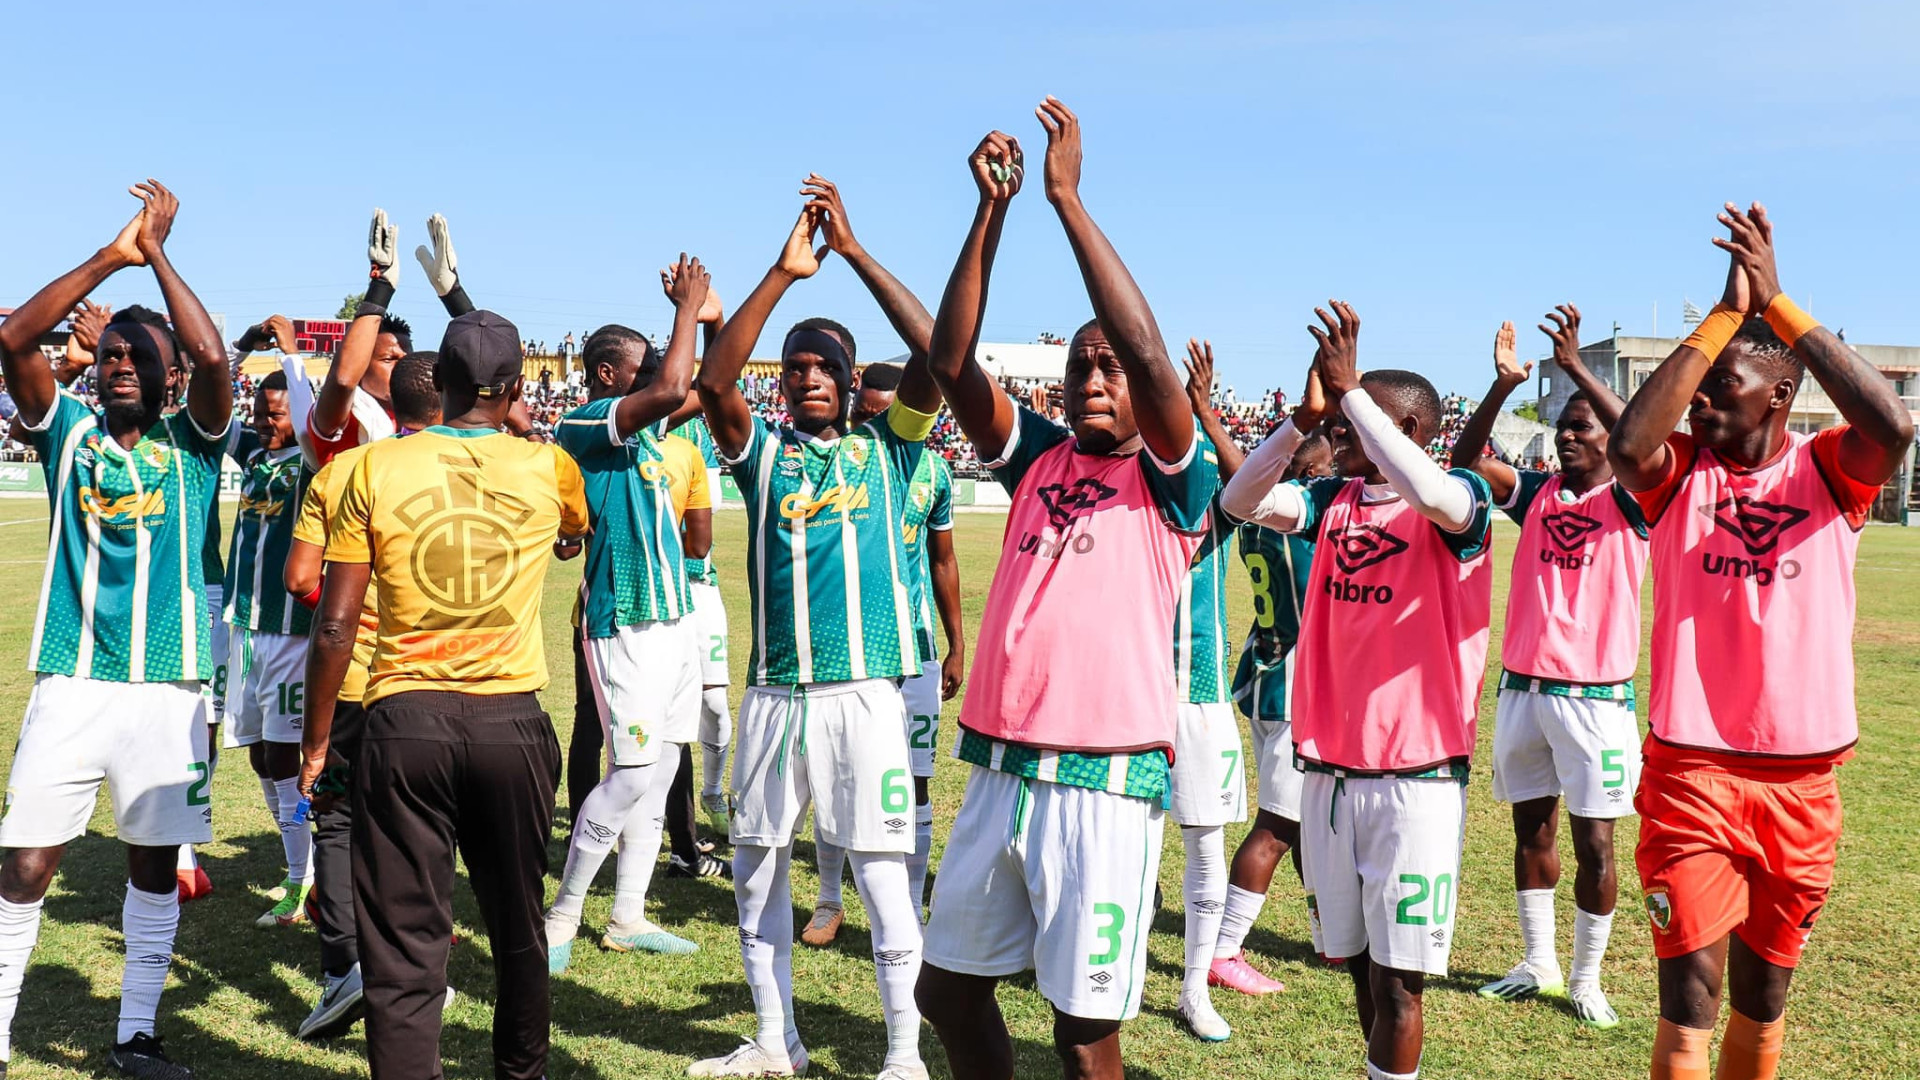 Moçambique/Futebol: Parabéns campeão,  Ferroviário do Beira vence e sagra-se campeão moçambicano de futebol